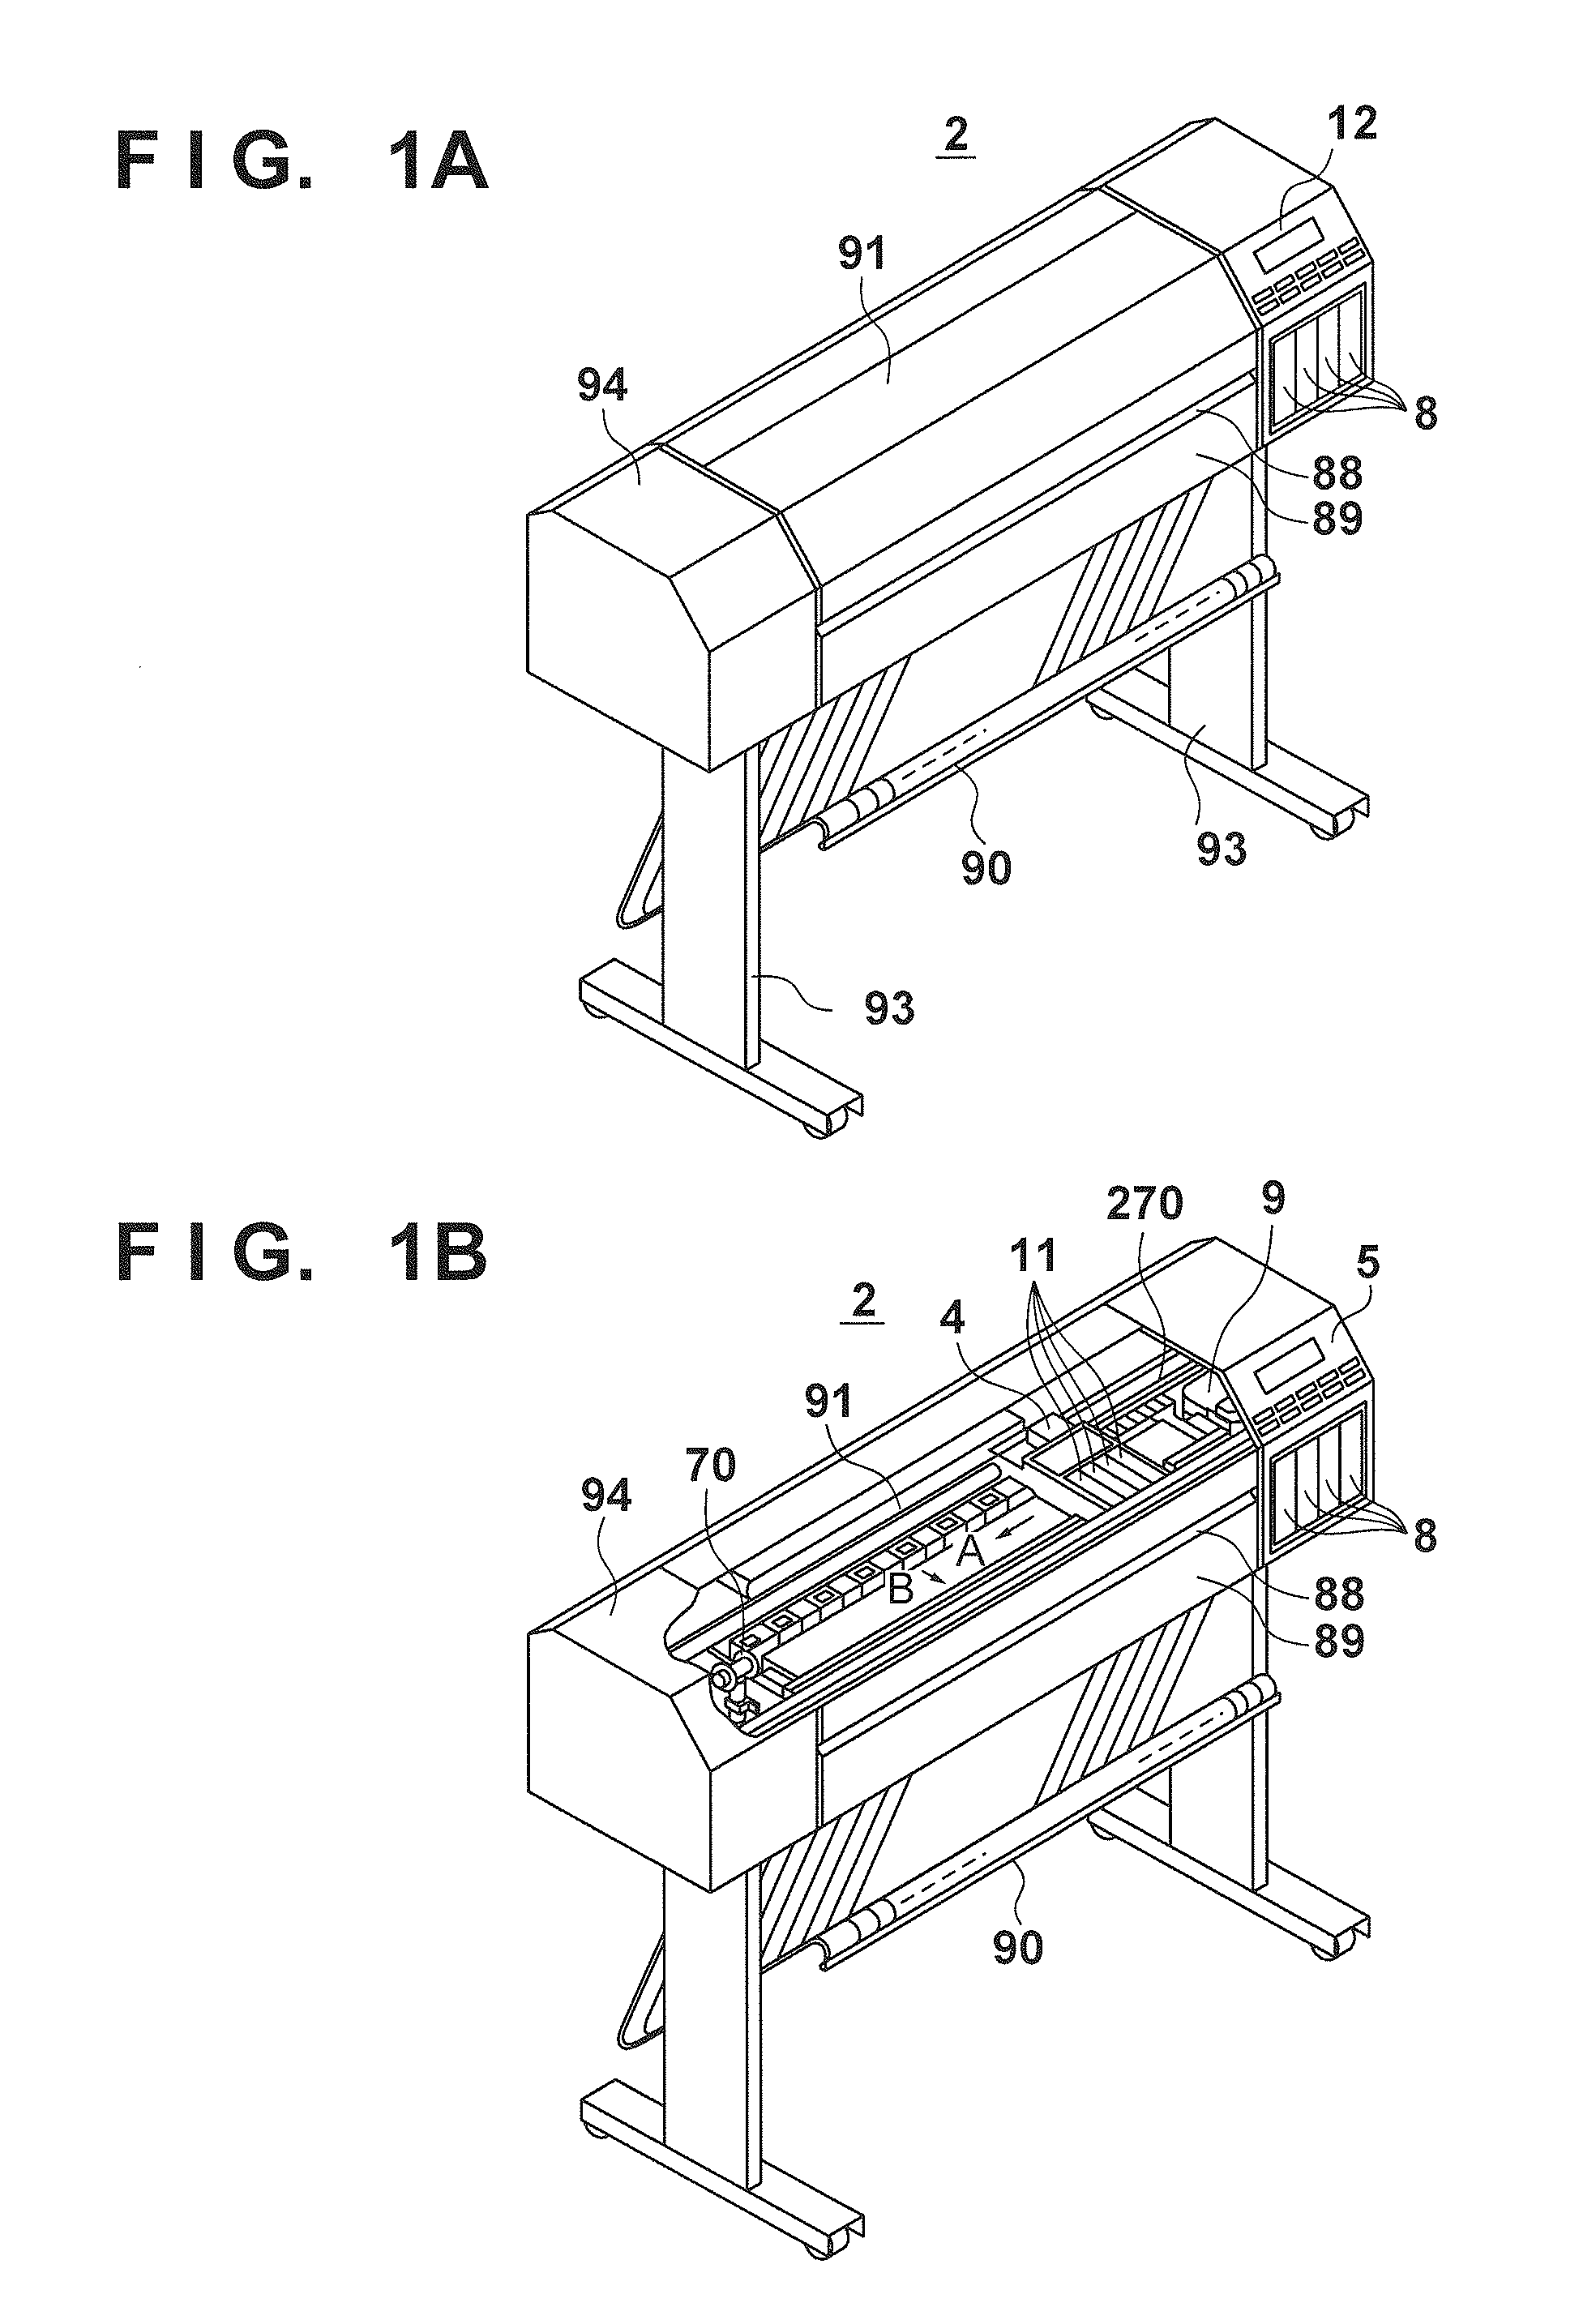 Printing apparatus